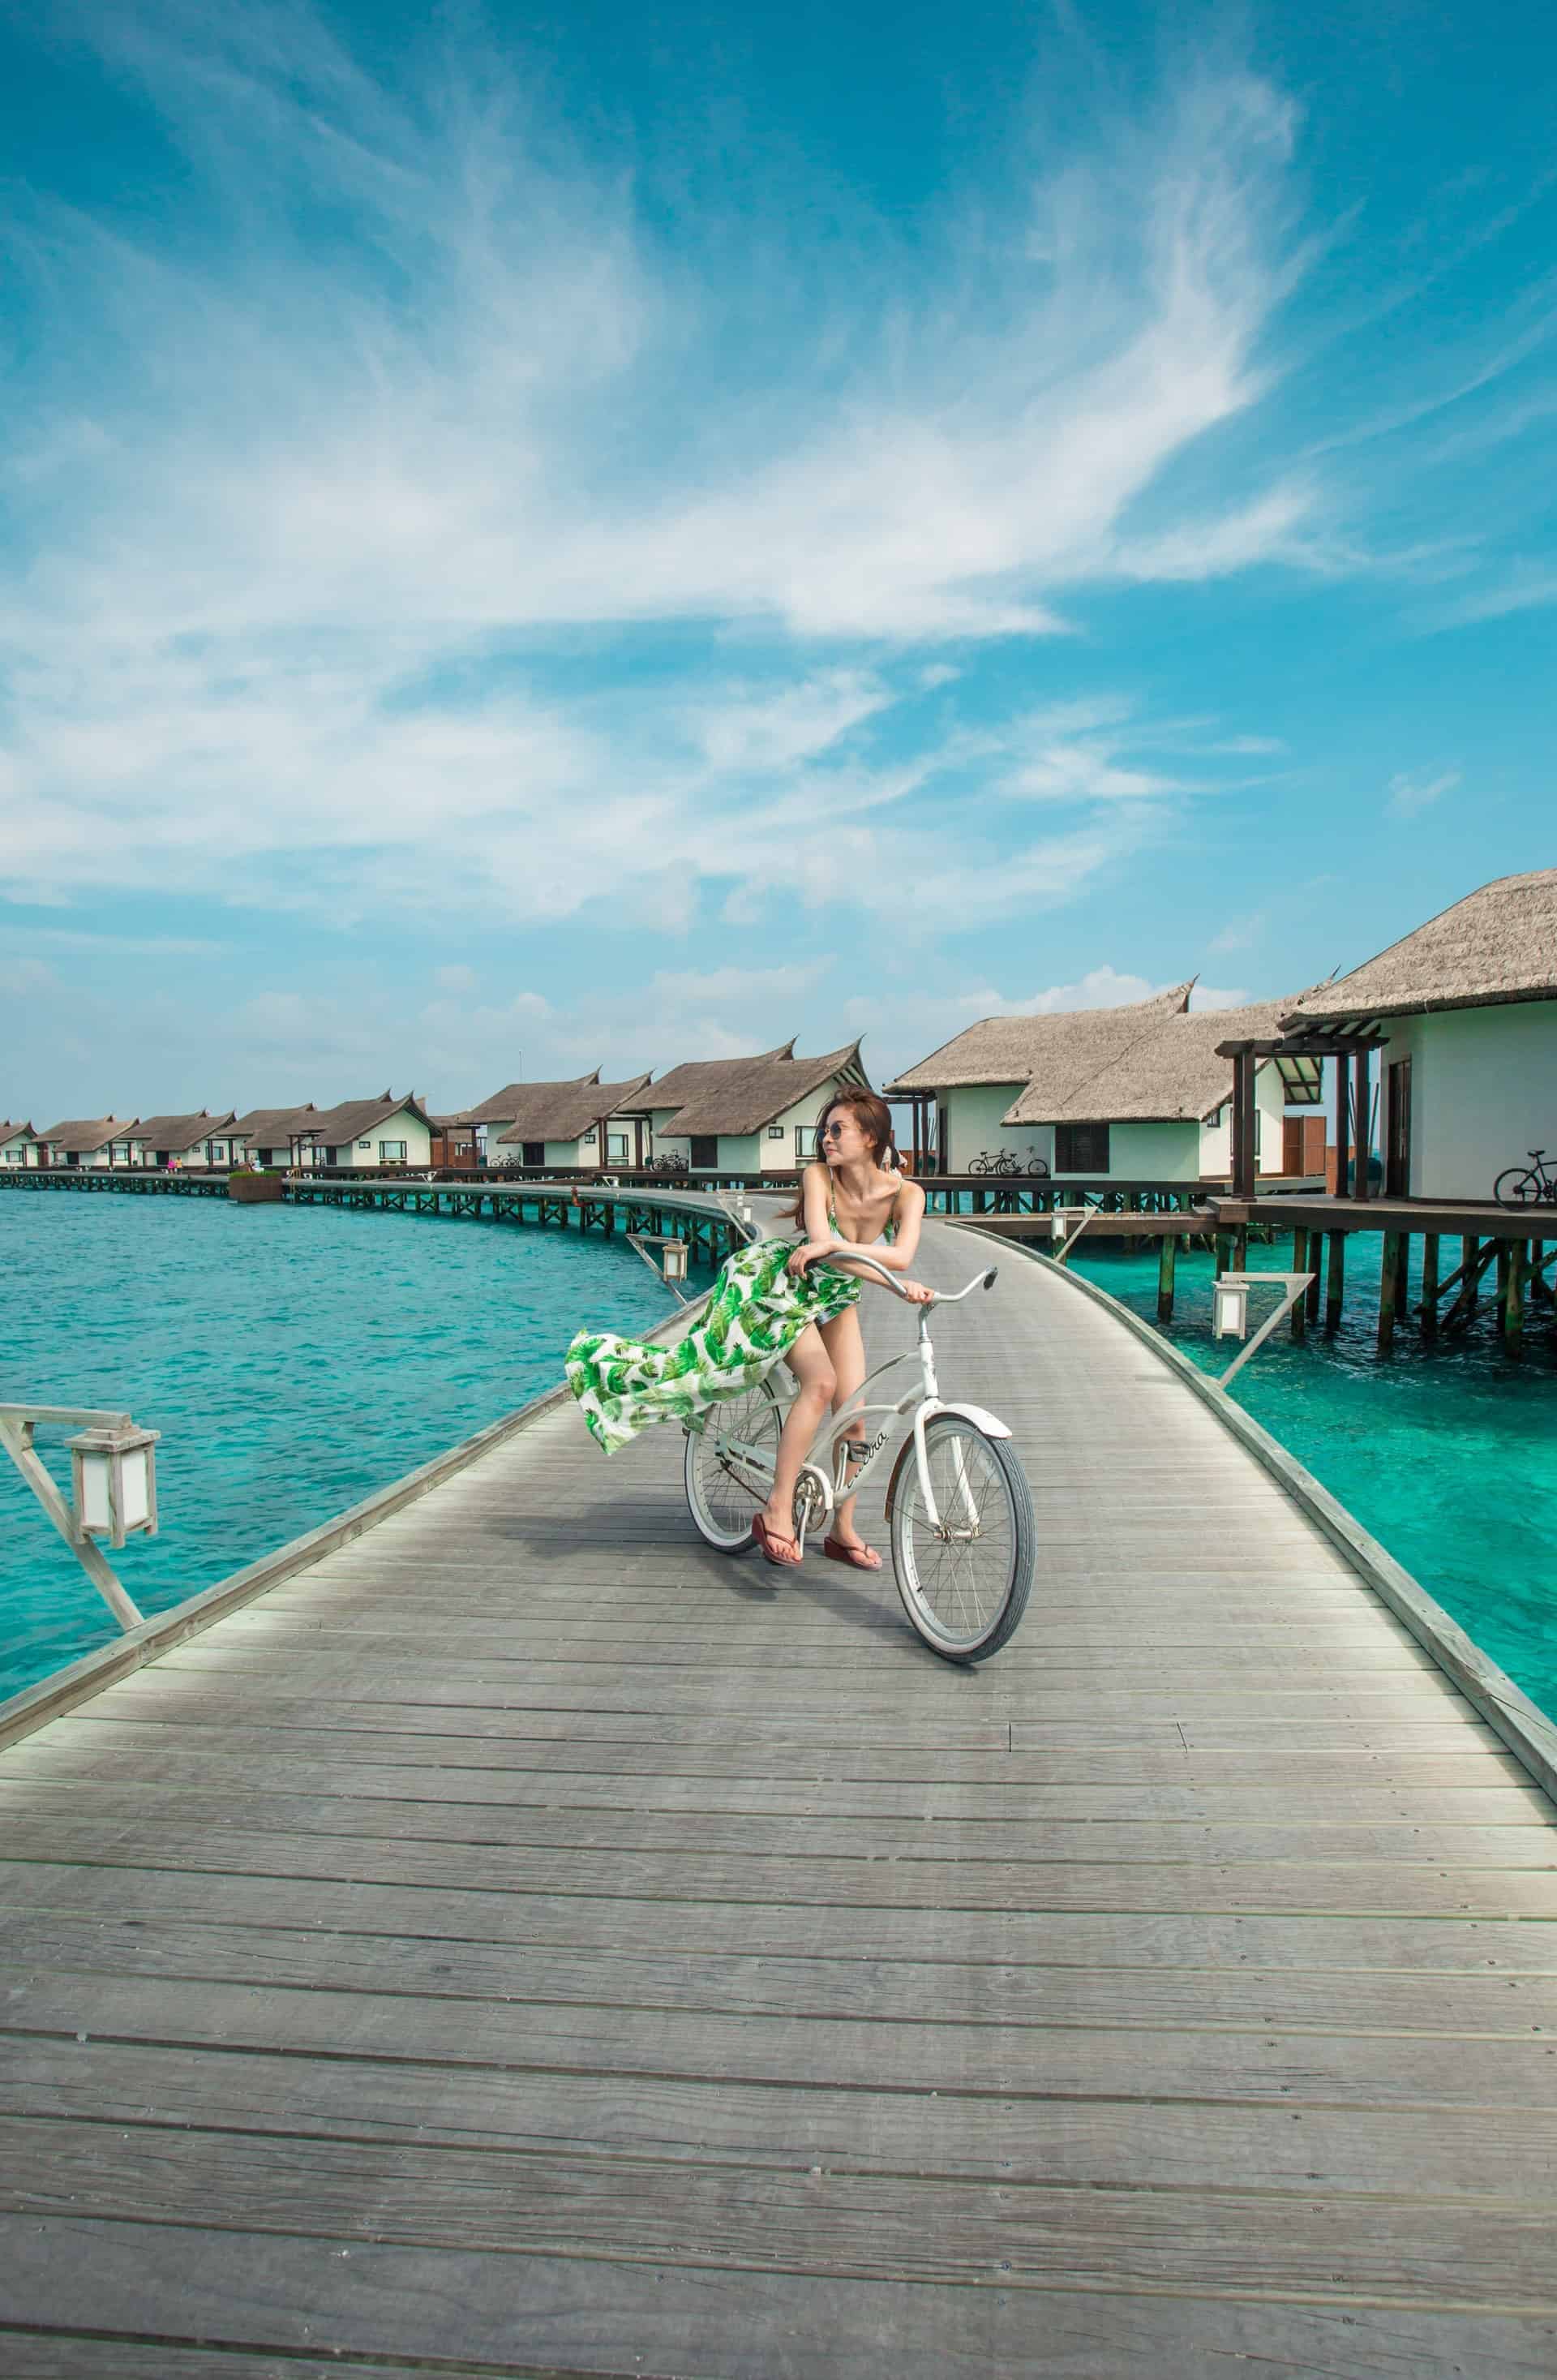 6 Instagramable Waterfront Hotel Di Pulau Samosir | Tempat menginap instagramable di Pulau Samosir yang berada di tengah Danau Toba. Yuk, cari tahu!